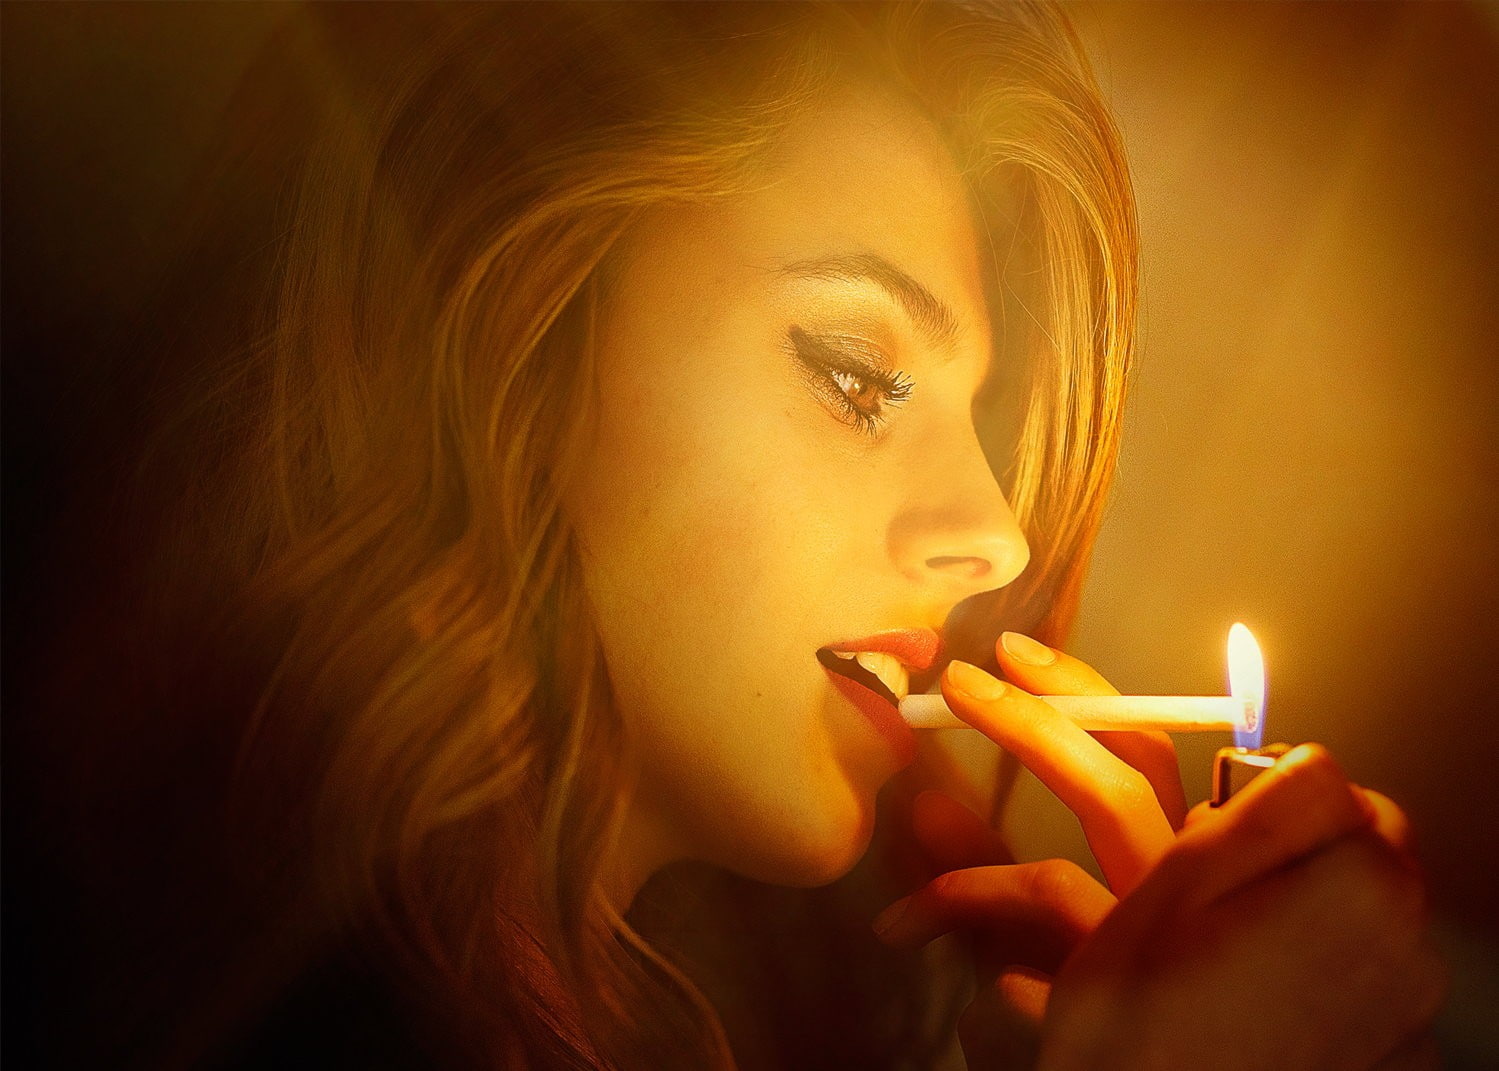 redhead, cigarettes, lighter, profile, women, brown eyes, smoking